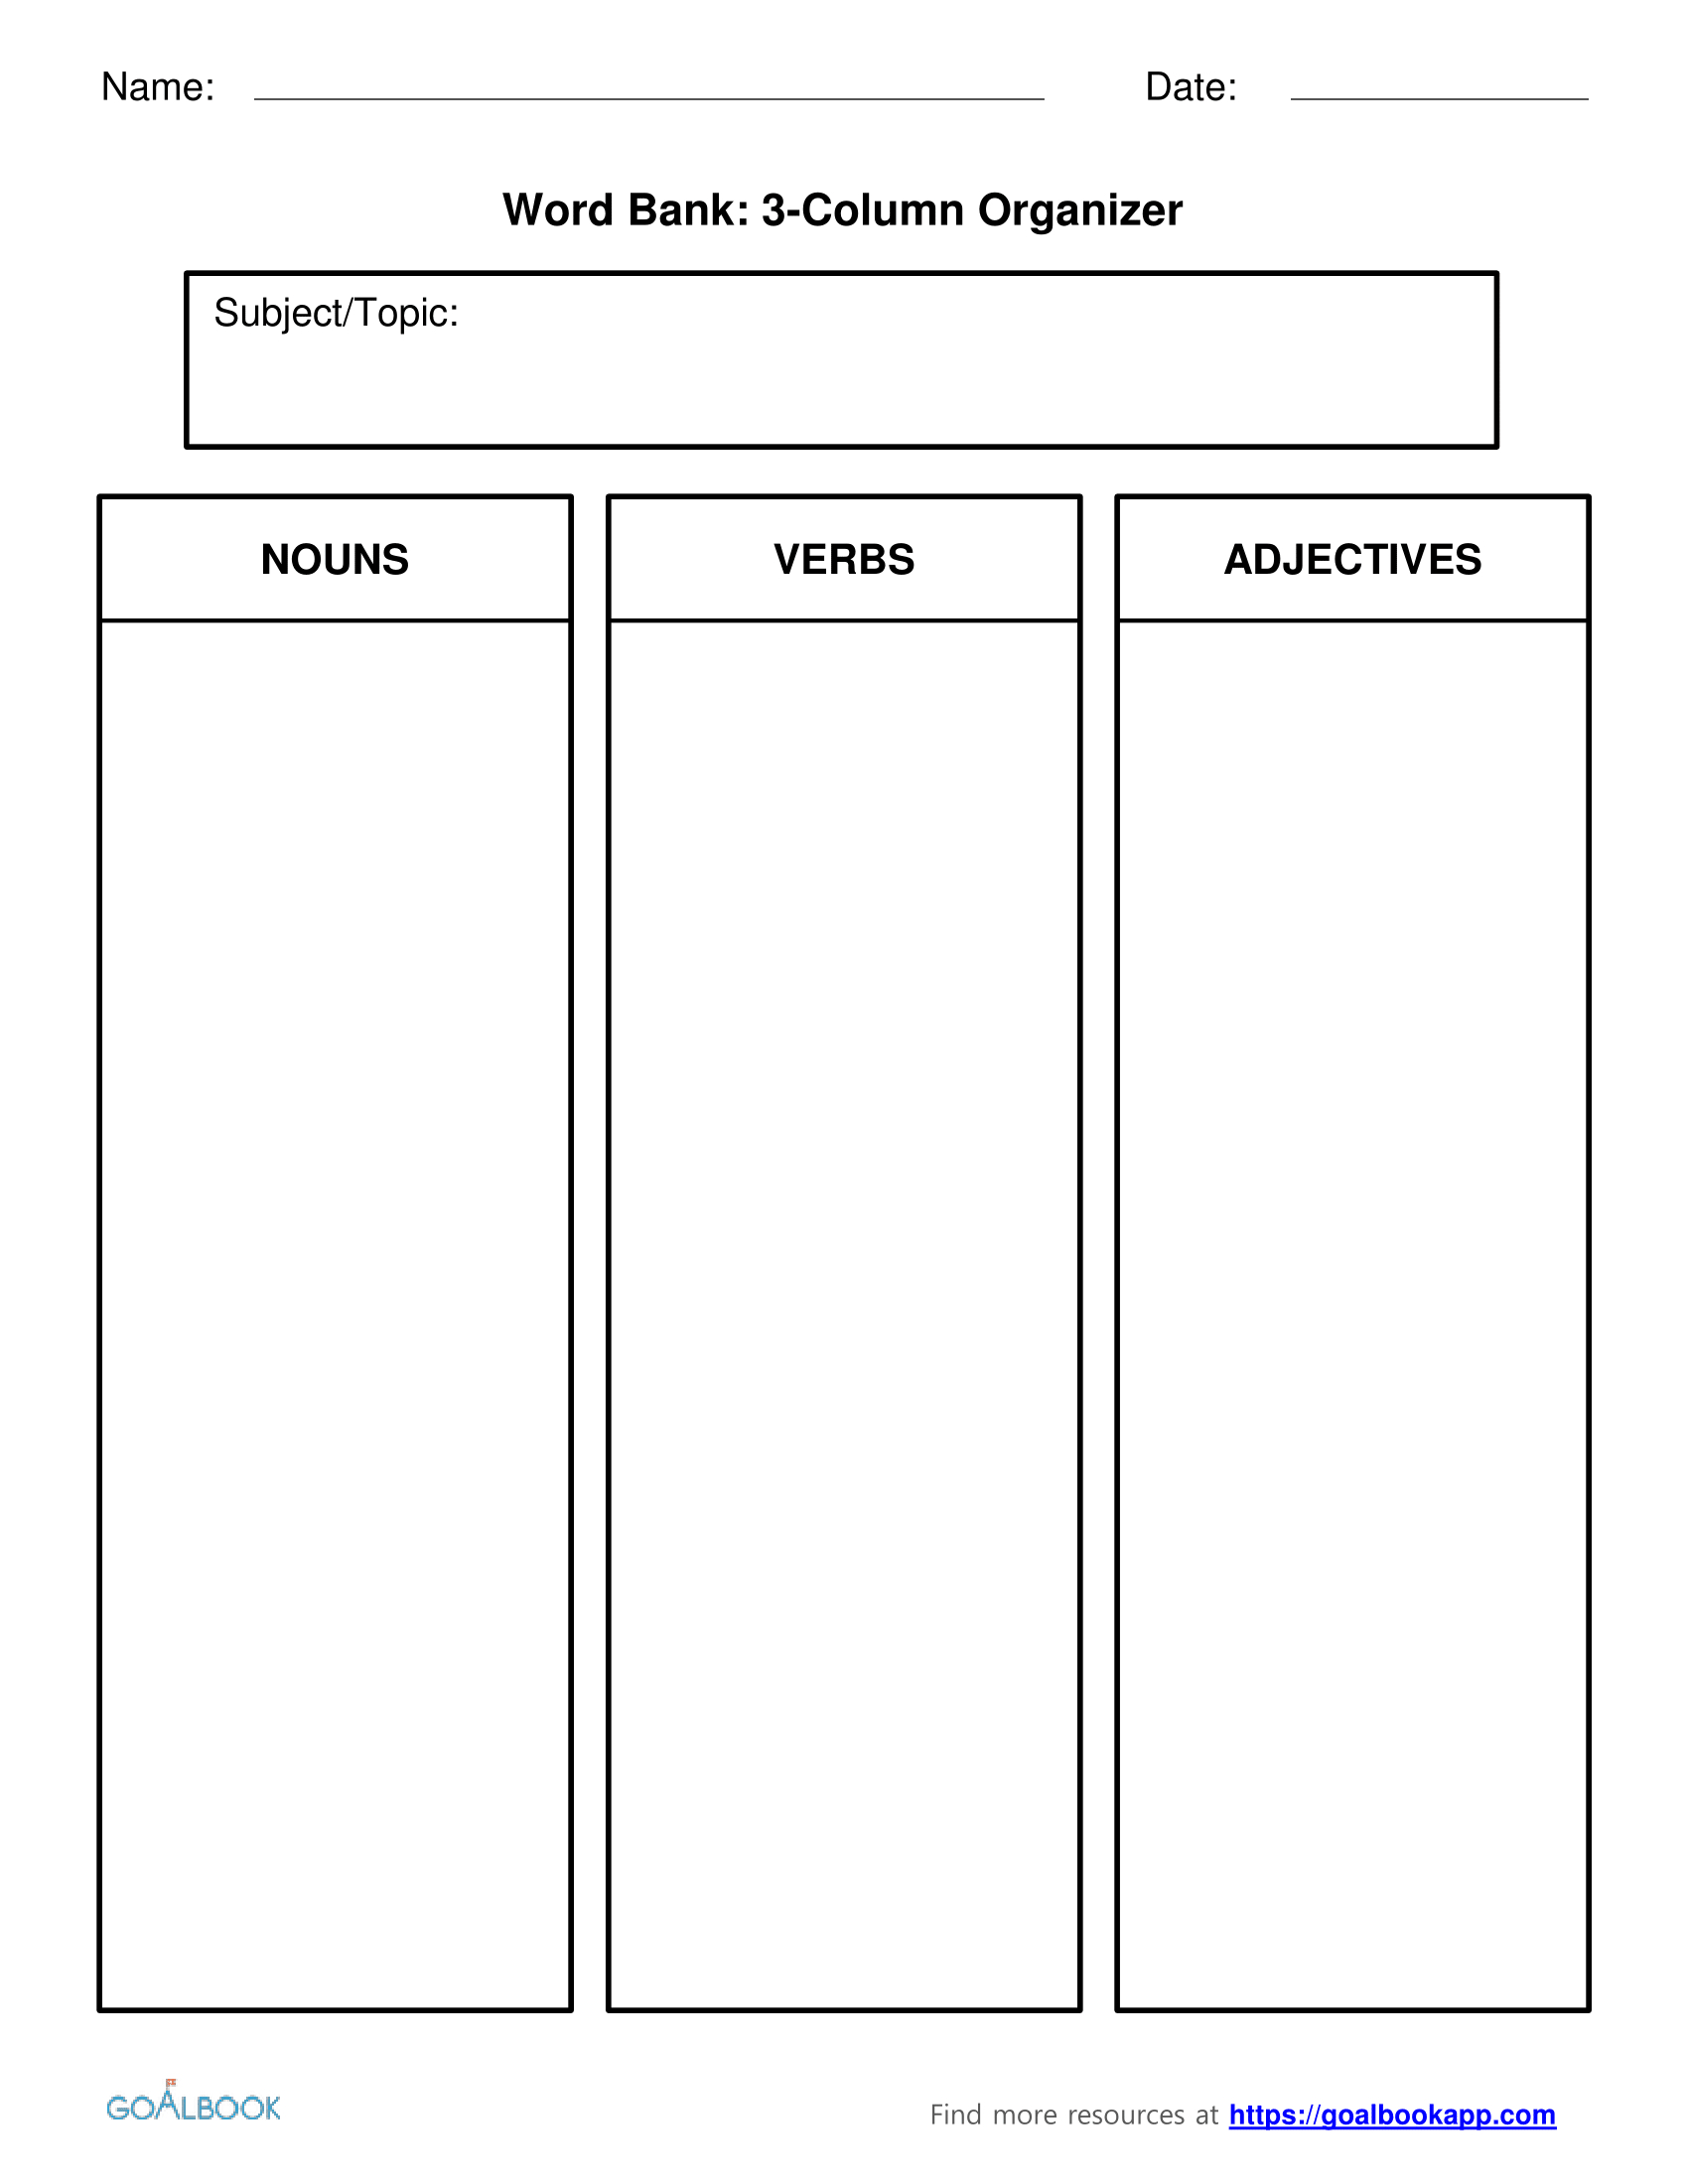 Word Bank | Udl Strategies – Goalbook Toolkit Regarding Personal Word Wall Template